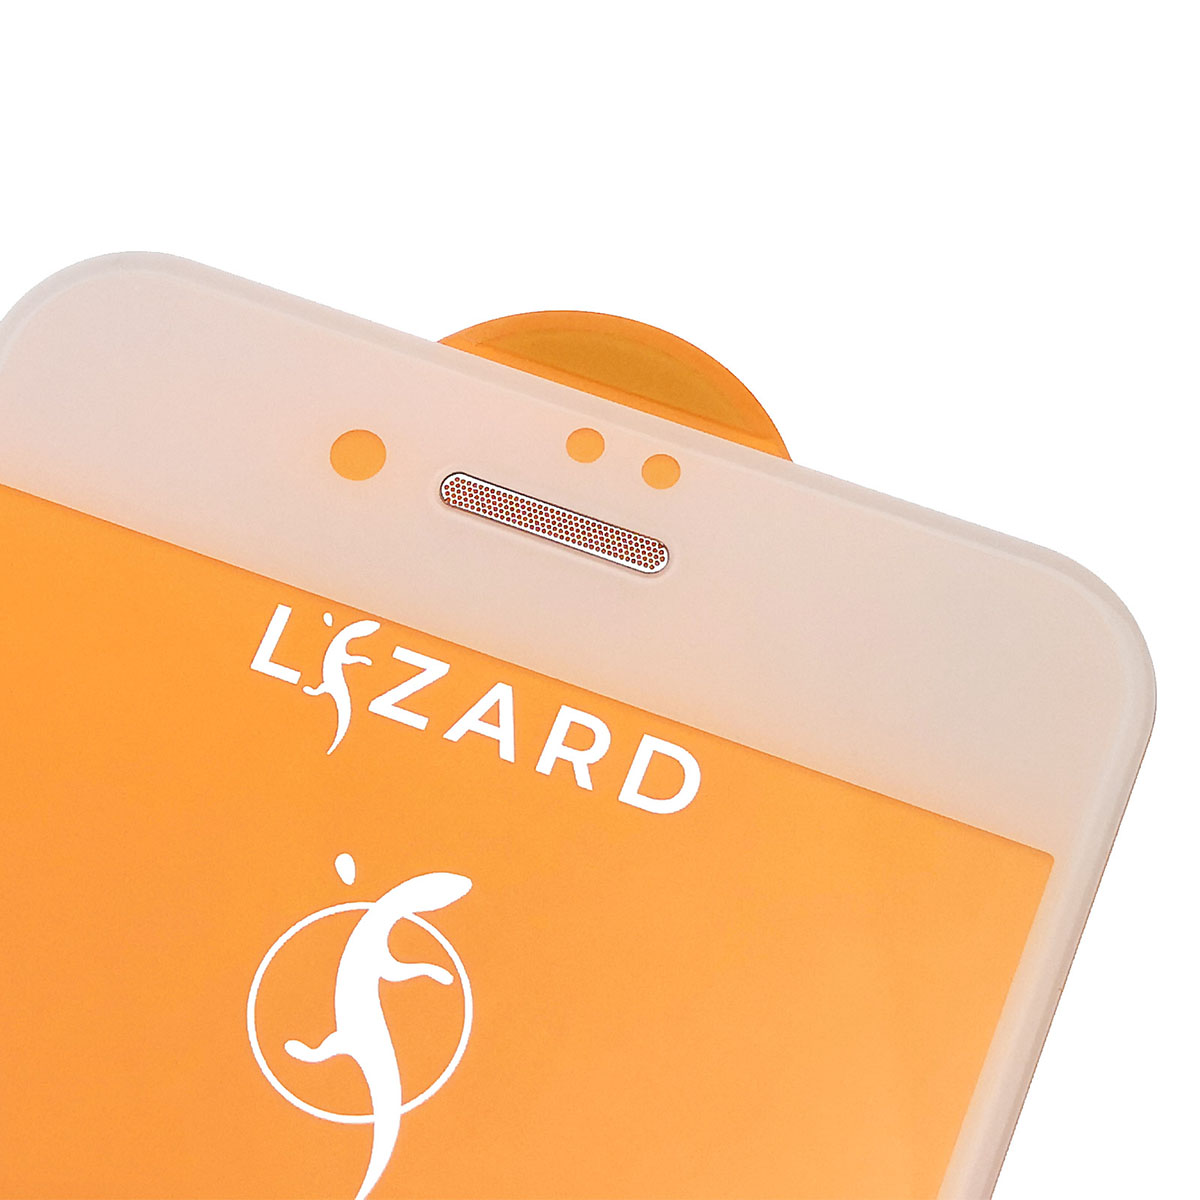 Защитное стекло 9D Lizard для APPLE iPhone 7, iPhone 8, с сеточкой на динамике, цвет белый.